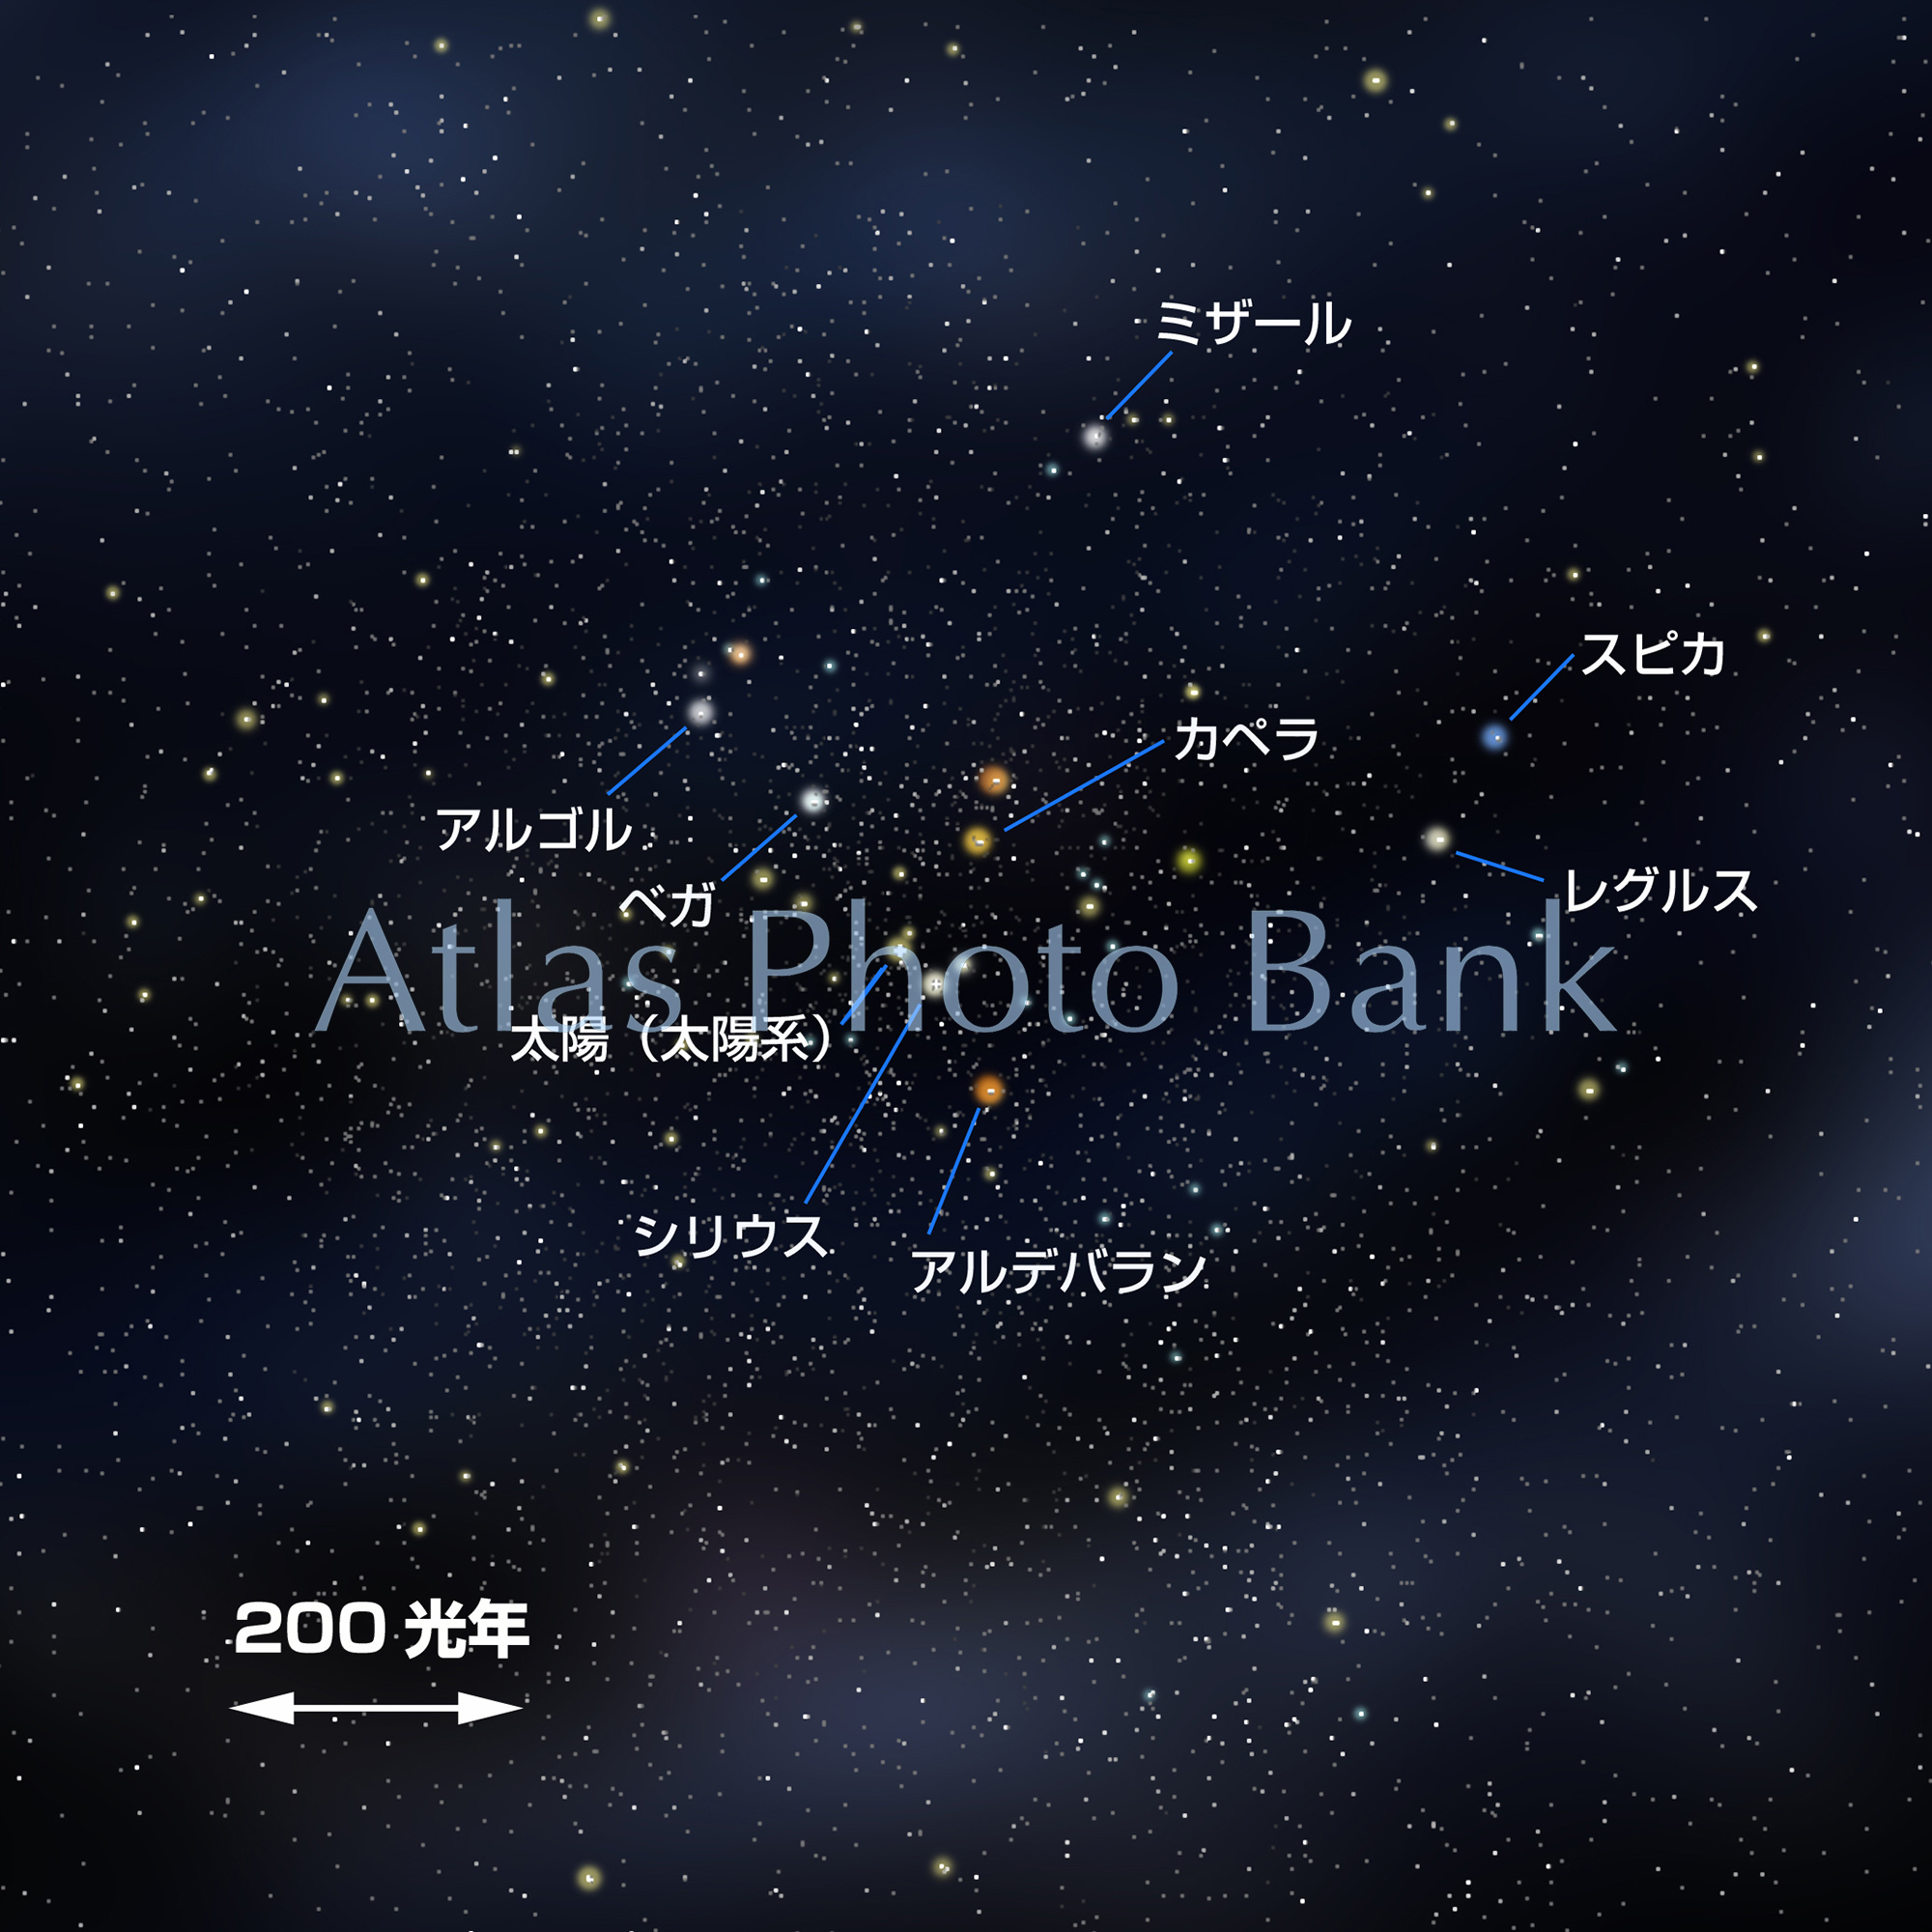 OG-071-1-宇宙の大きさマップ-太陽系周辺の星々